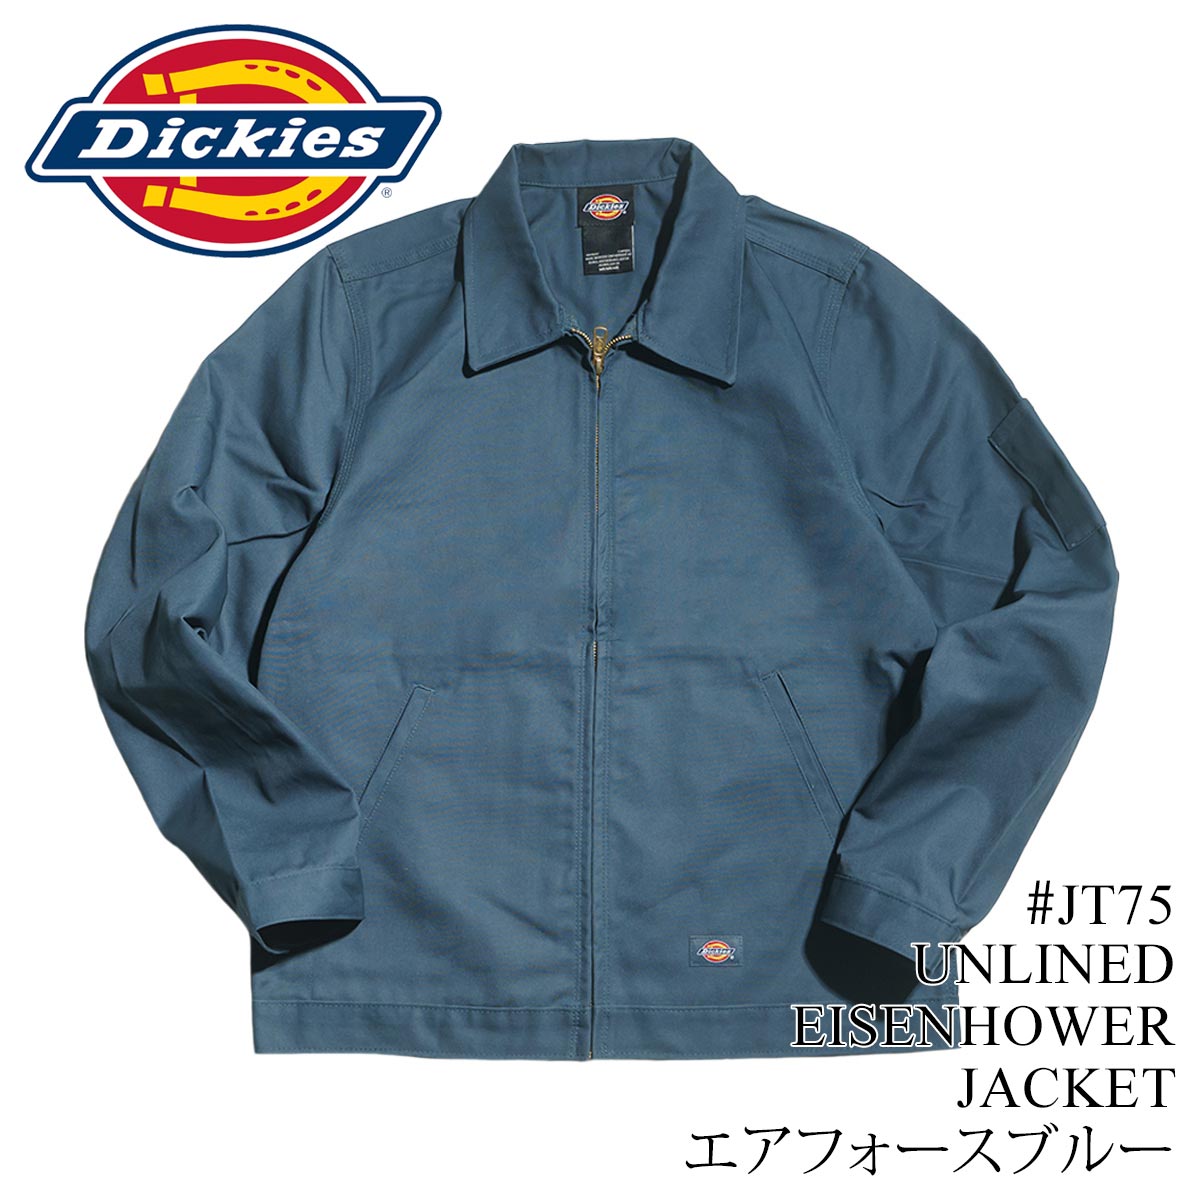 ディッキーズ Dickies #JT75 アンラインド アイゼンハワージャケット メンズ S-XXL スイングトップ 作業着 作業服